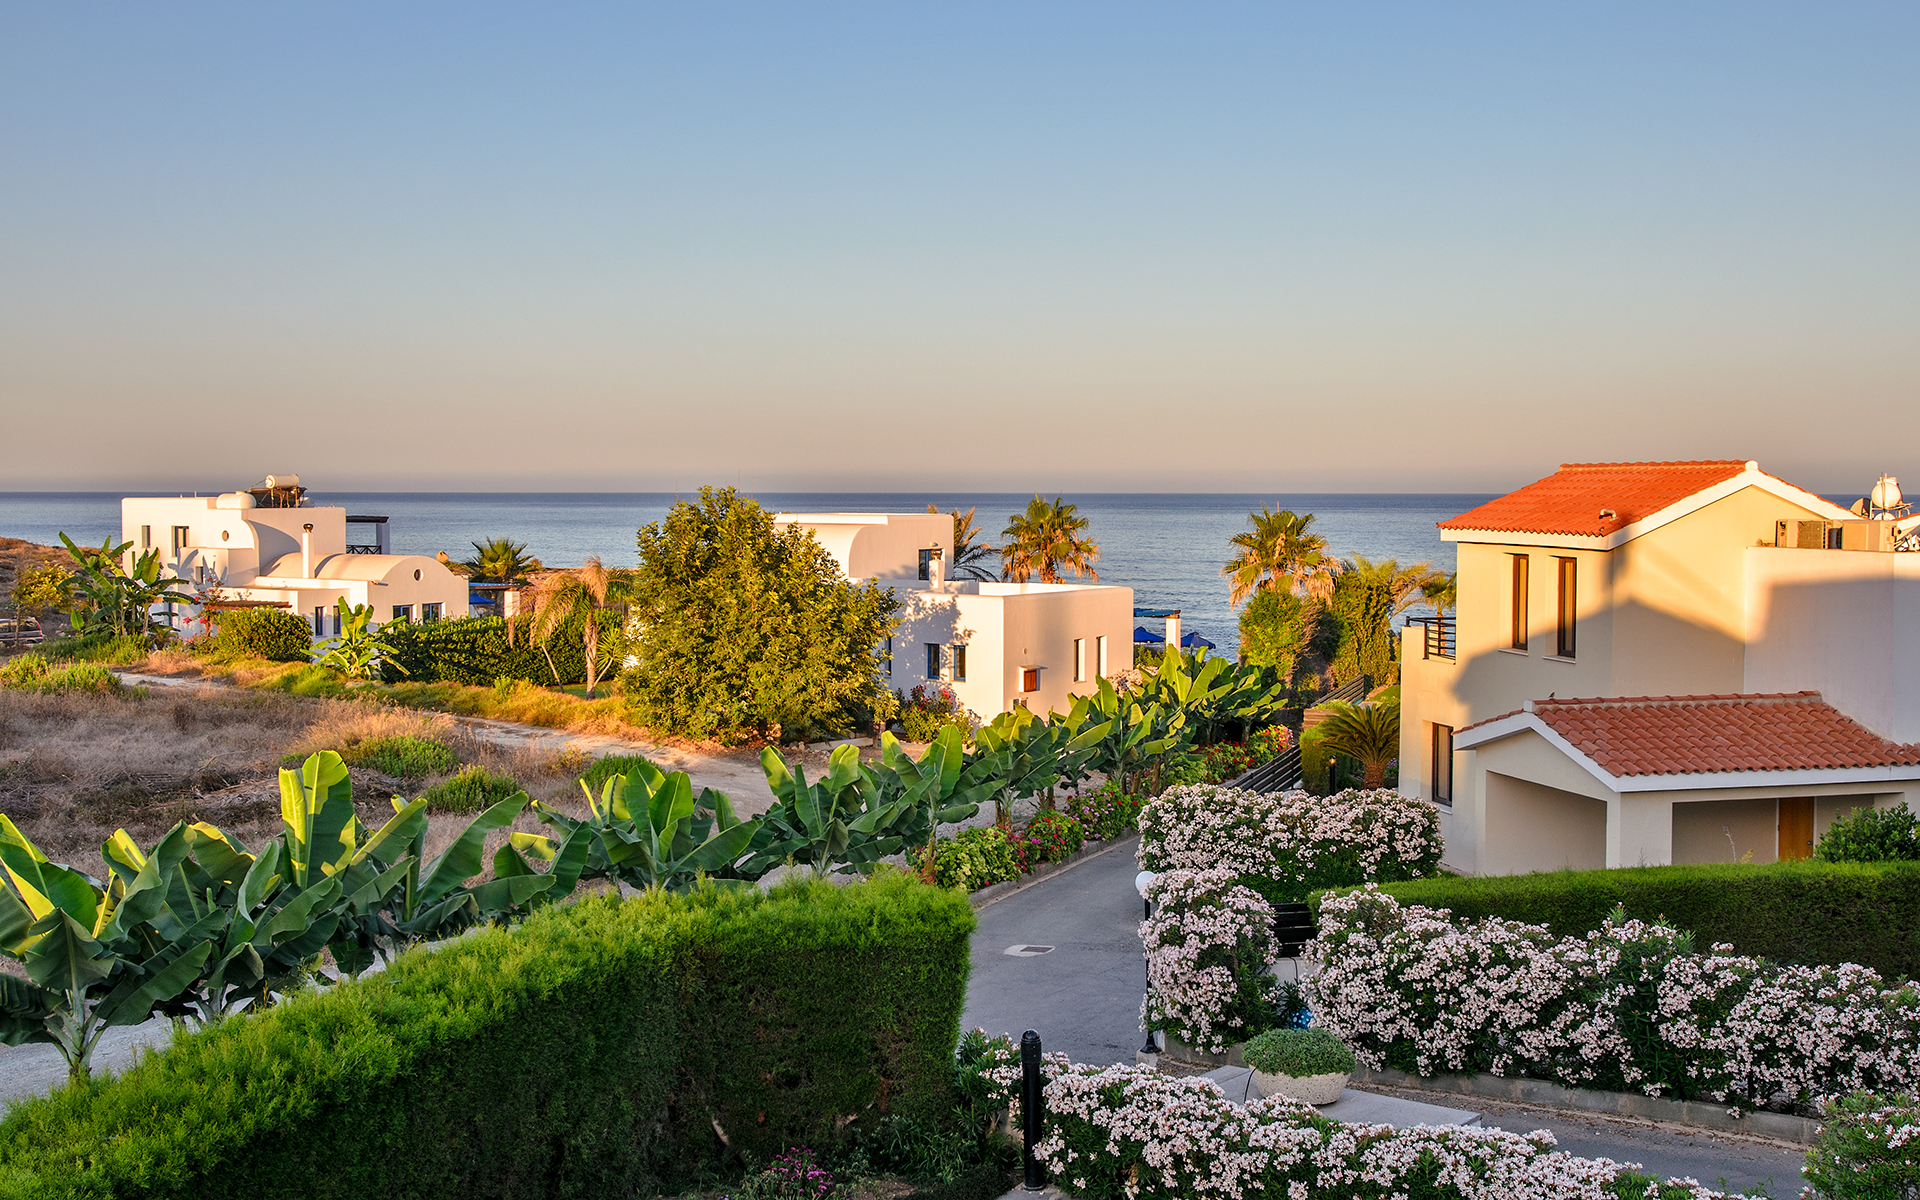 Τον αντίκτυπο των Airbnb στην έλλειψη ακινήτων υπογράμμισε ο Κυπριακός Σύνδεσμος Τουρισμού